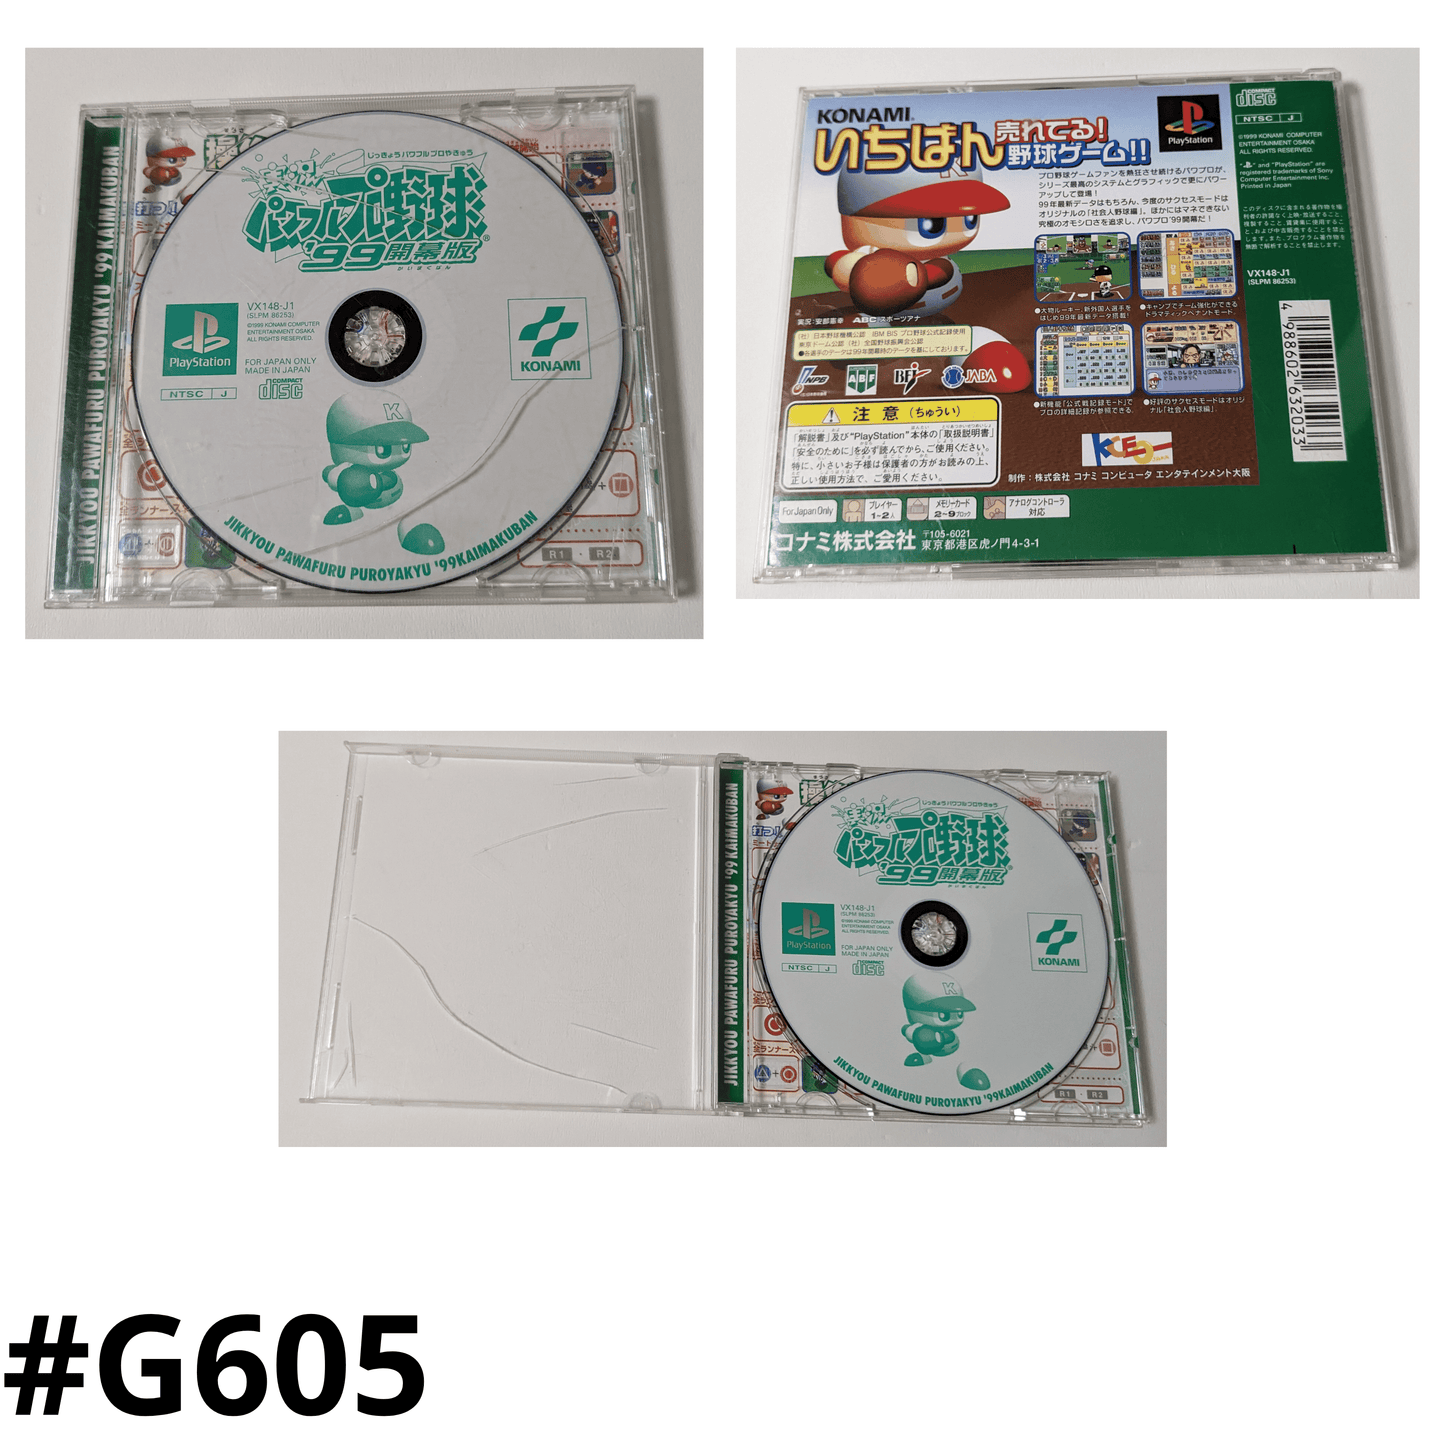 Jikkyou Krachtige Pro Yakyu 99 | PlayStation1 | Japans